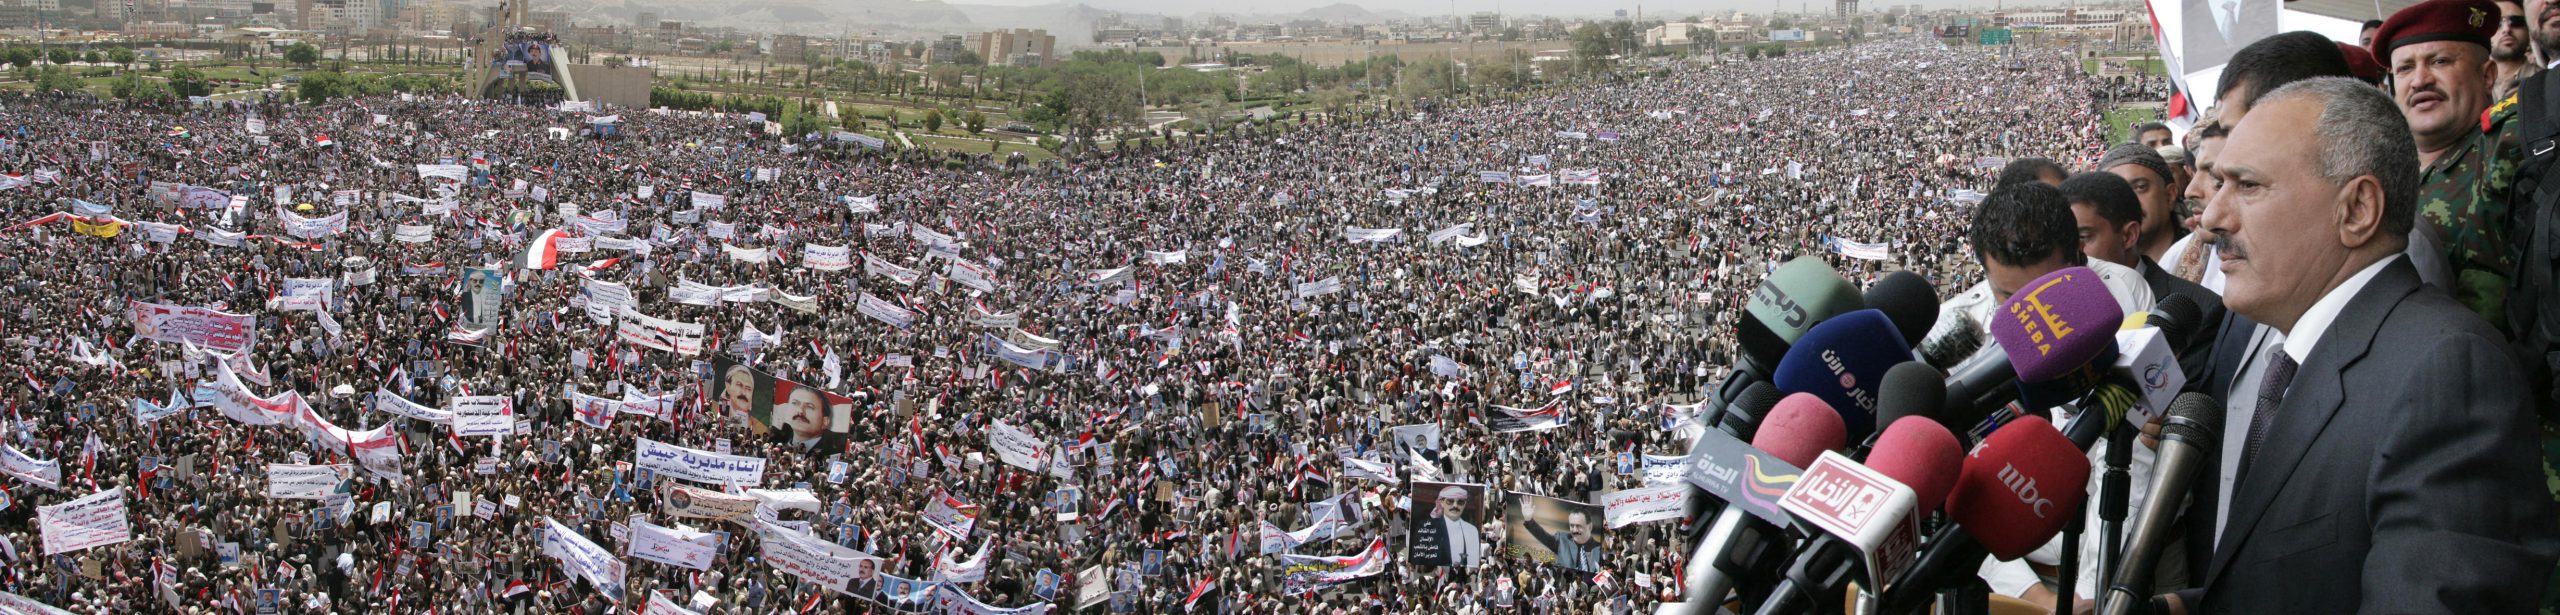 طوفان بشري في صنعاء وملايين اليمنيين يشاركون في جمعة الإخاء ومسيرة مؤيدة للشرعية الدستورية في عموم المحافظات